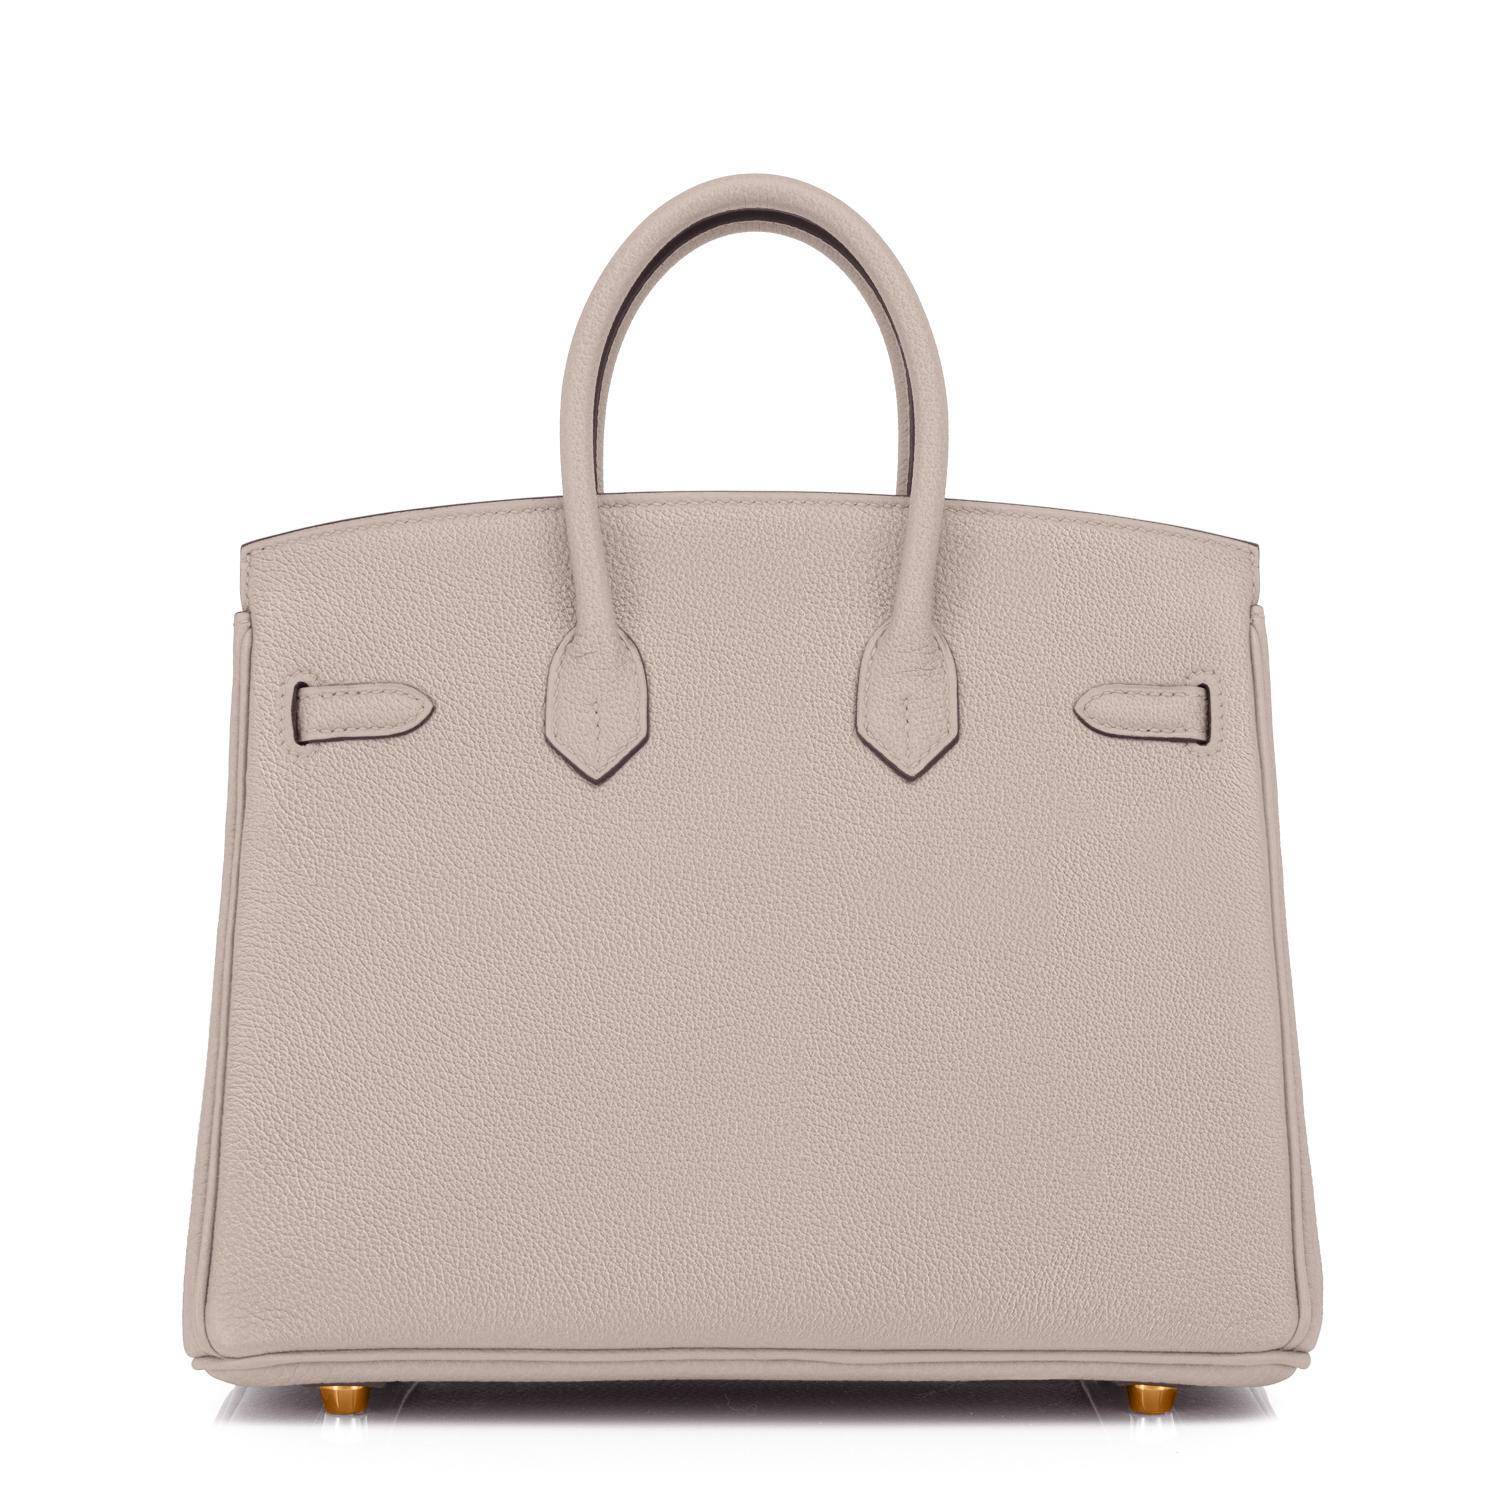 Hermes Birkin 25cm Gris Asphalte Grey Beige Bag Gold Hardware Y Stamp, 2020 1